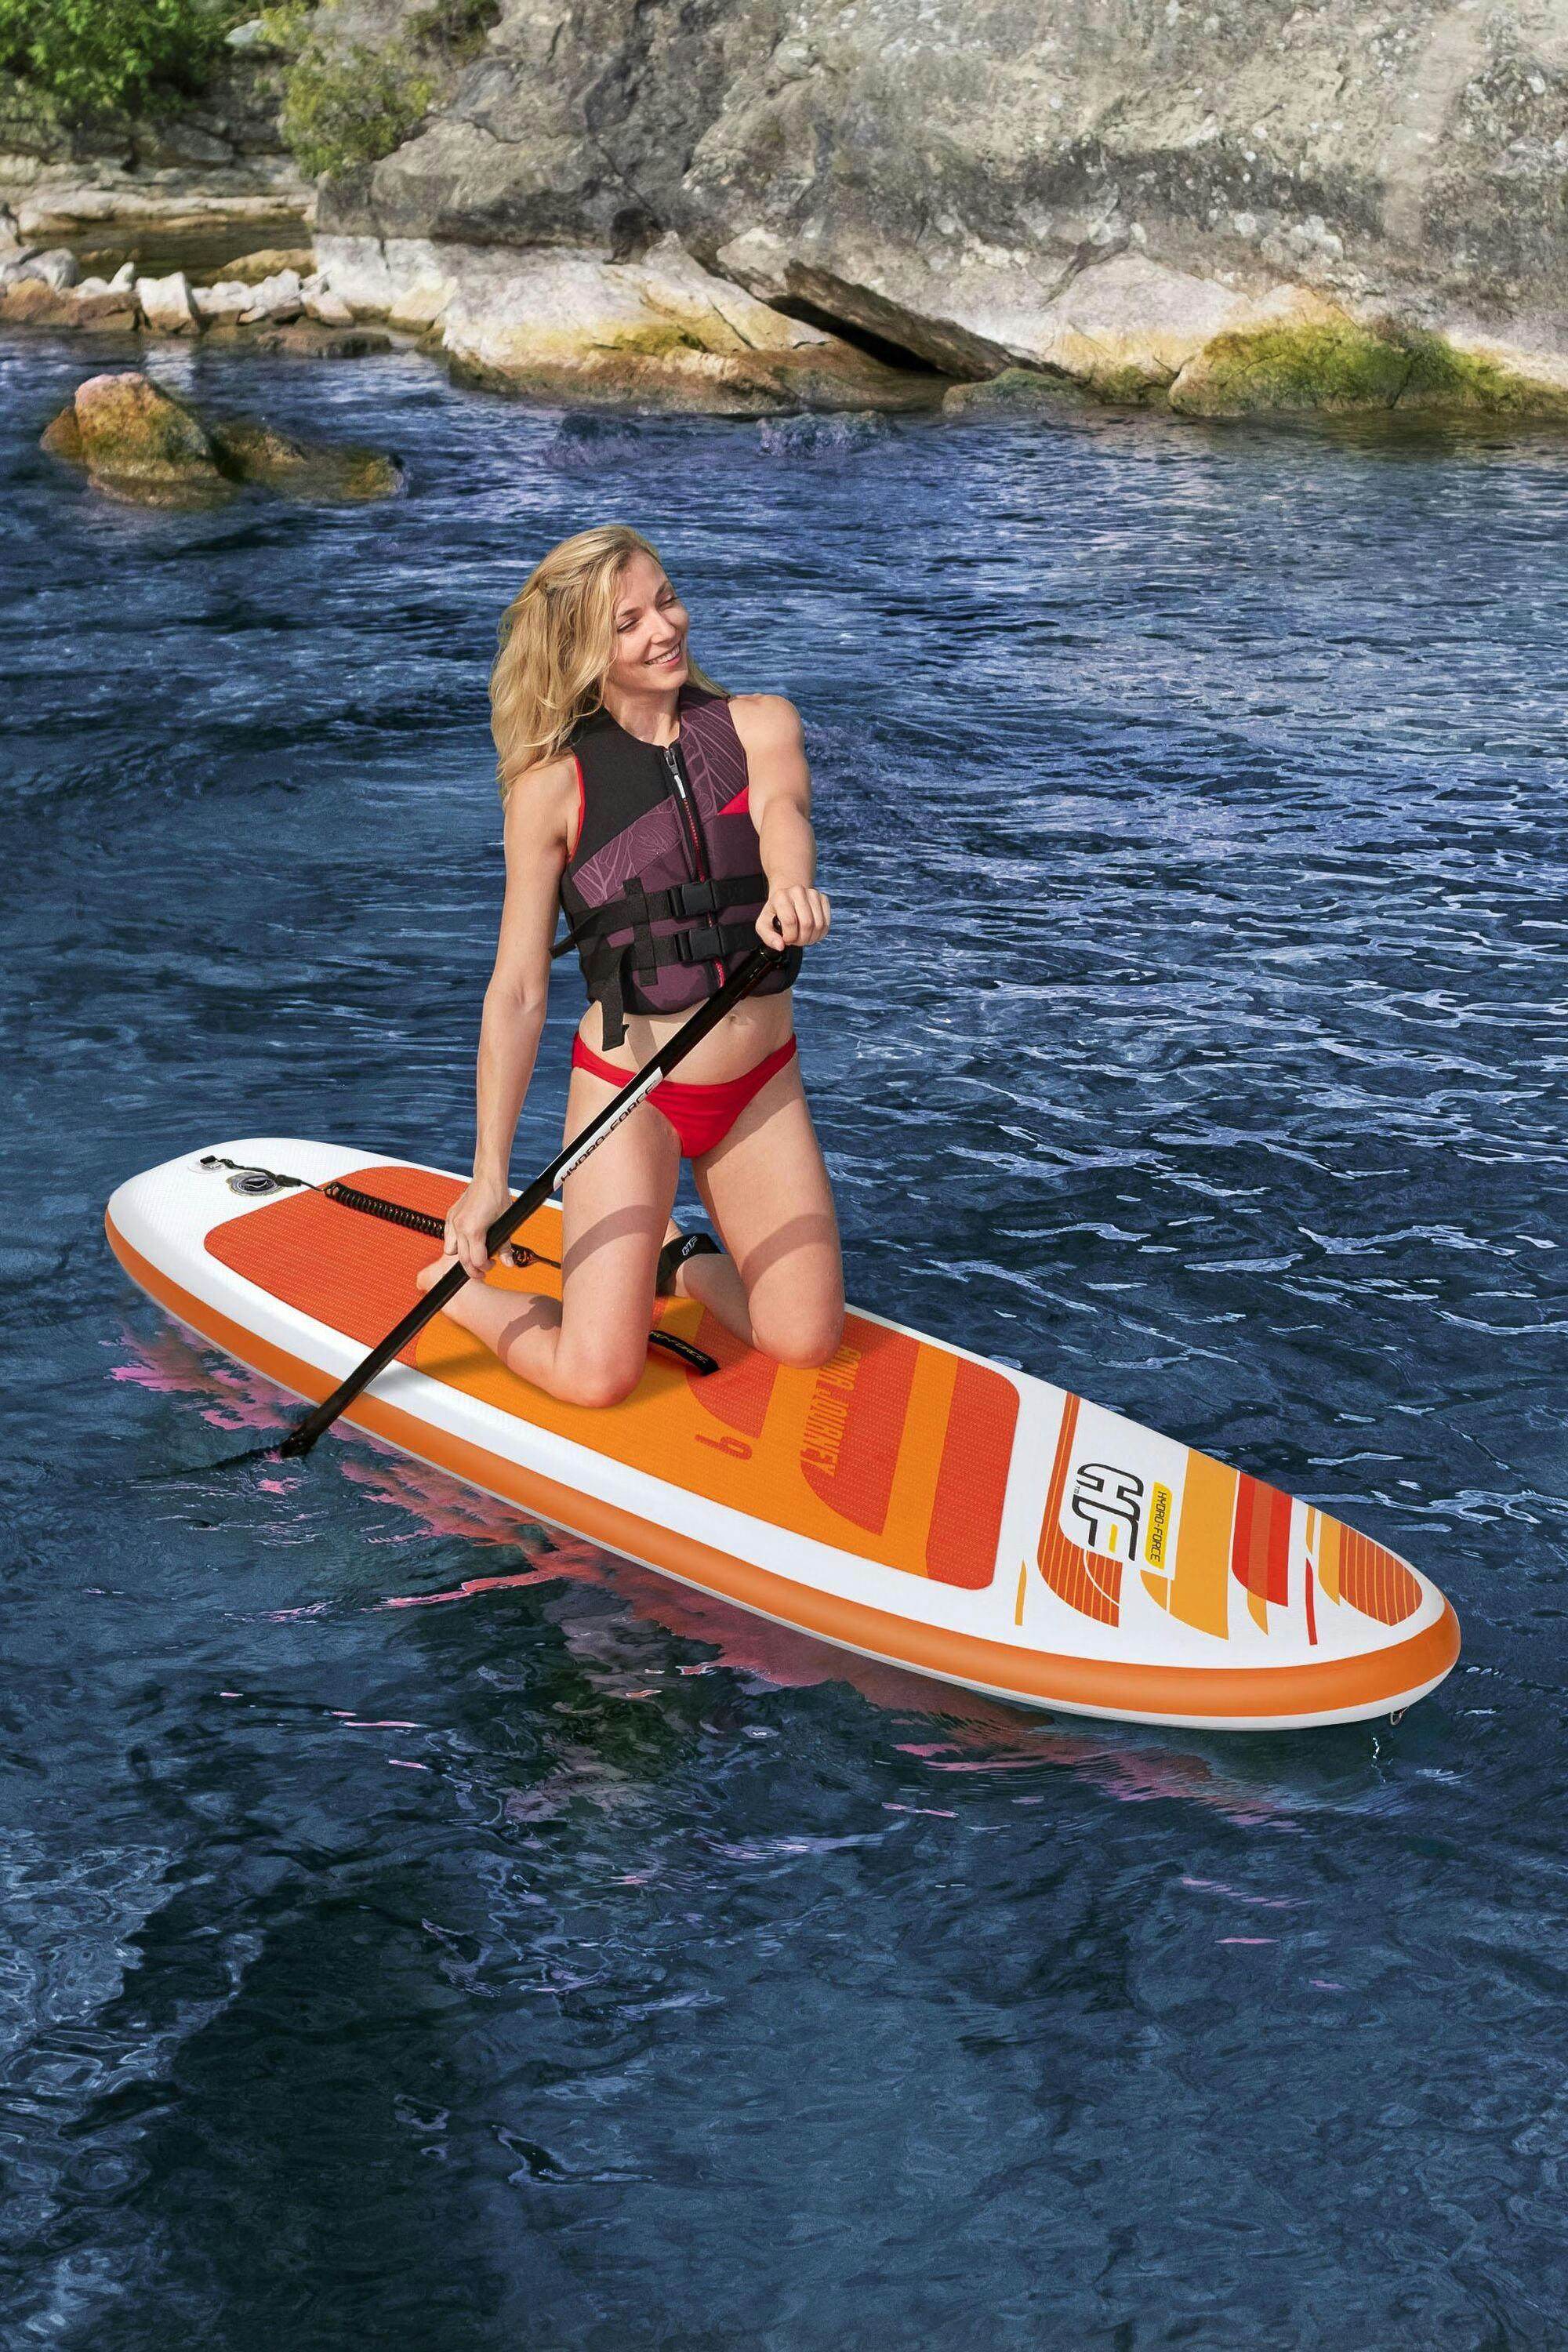 Sports d'eau Paddle SUP gonflable Hydro-Force™ Aqua Journey 274 x 76 x 12 cm, pompe, pagaie, leash, sac à dos de transport Bestway 7